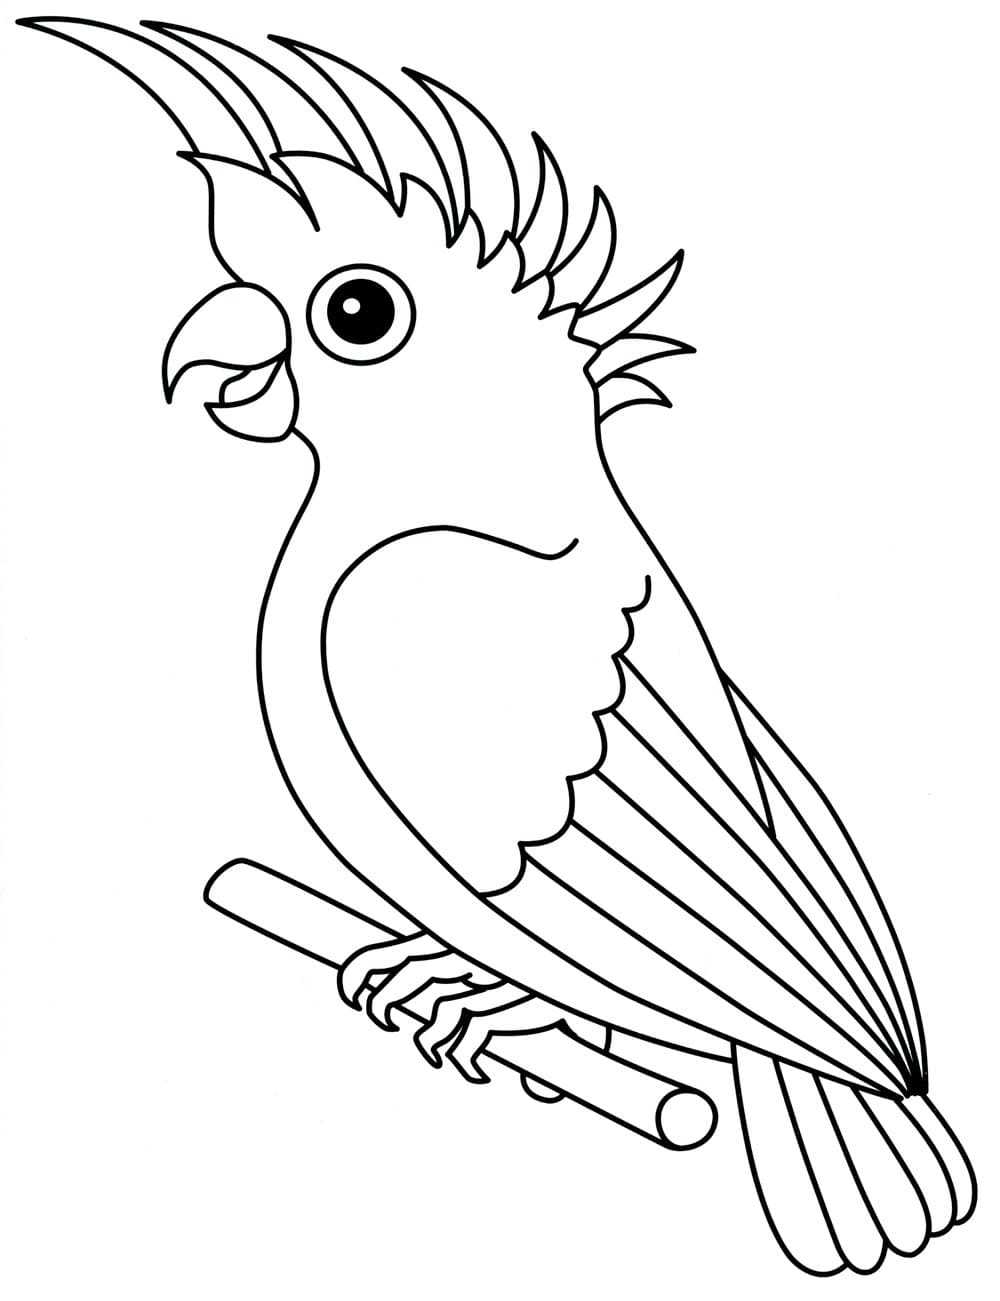 Рассказ о перелетных птицах для детей (как живут, описание)